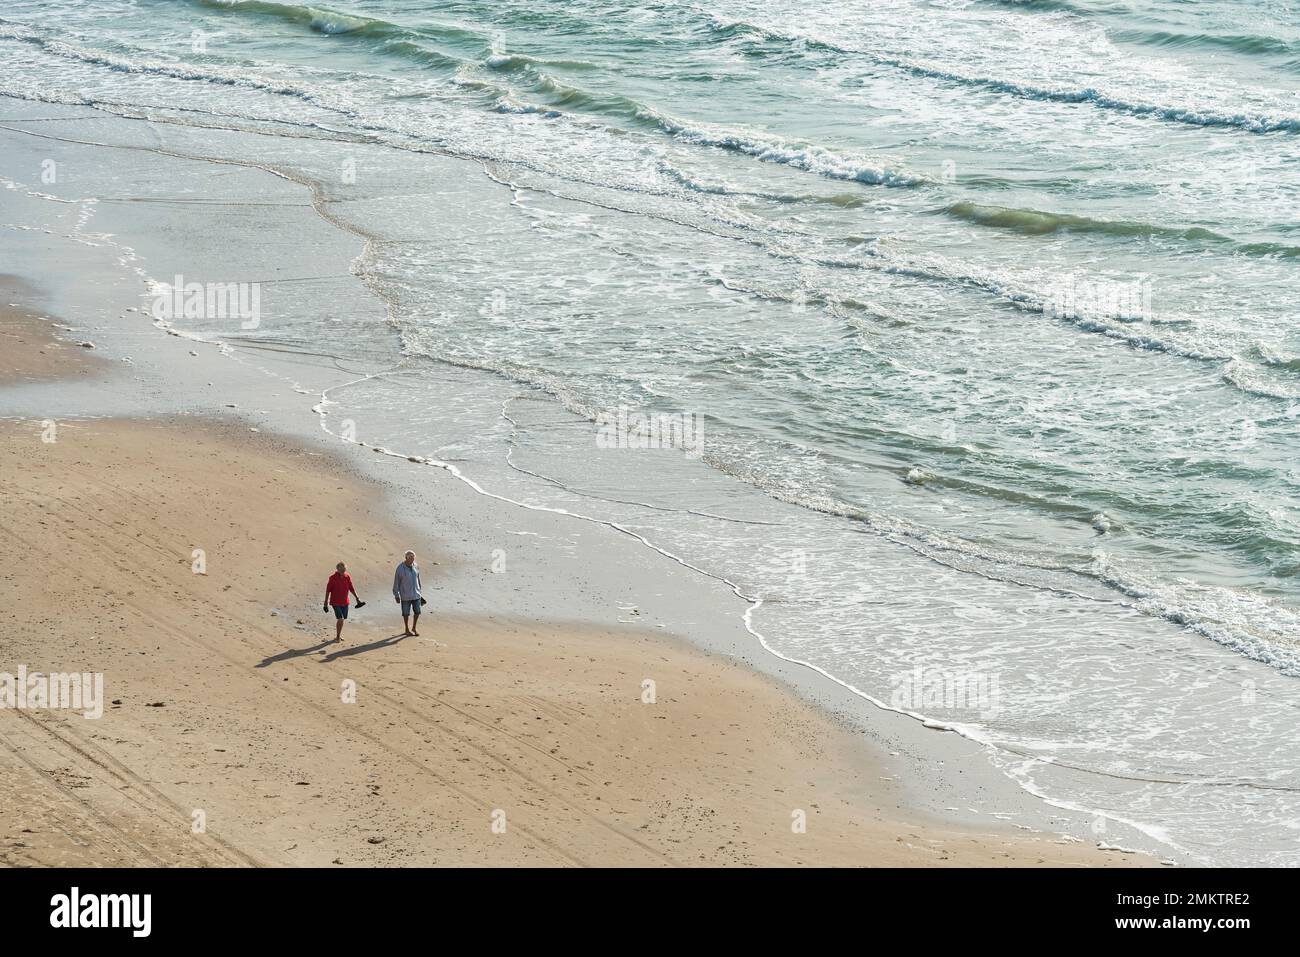 Dänemark, Lönstrup, Nordjütland: Älteres Paar spaziert auf einem Sandstrand neben der Brandung der Nordsee Banque D'Images